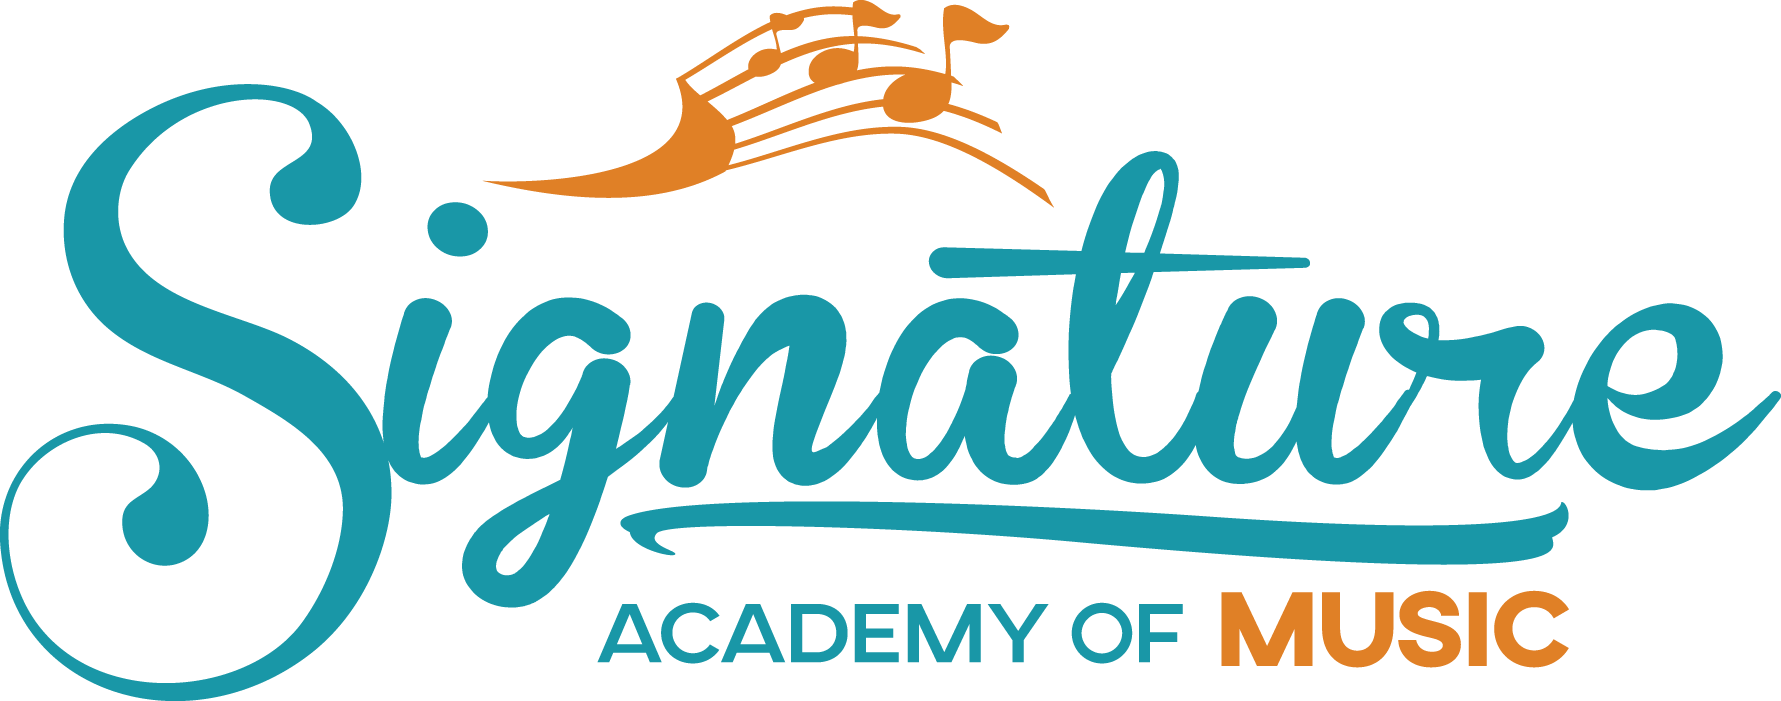 Signature Academy of Music